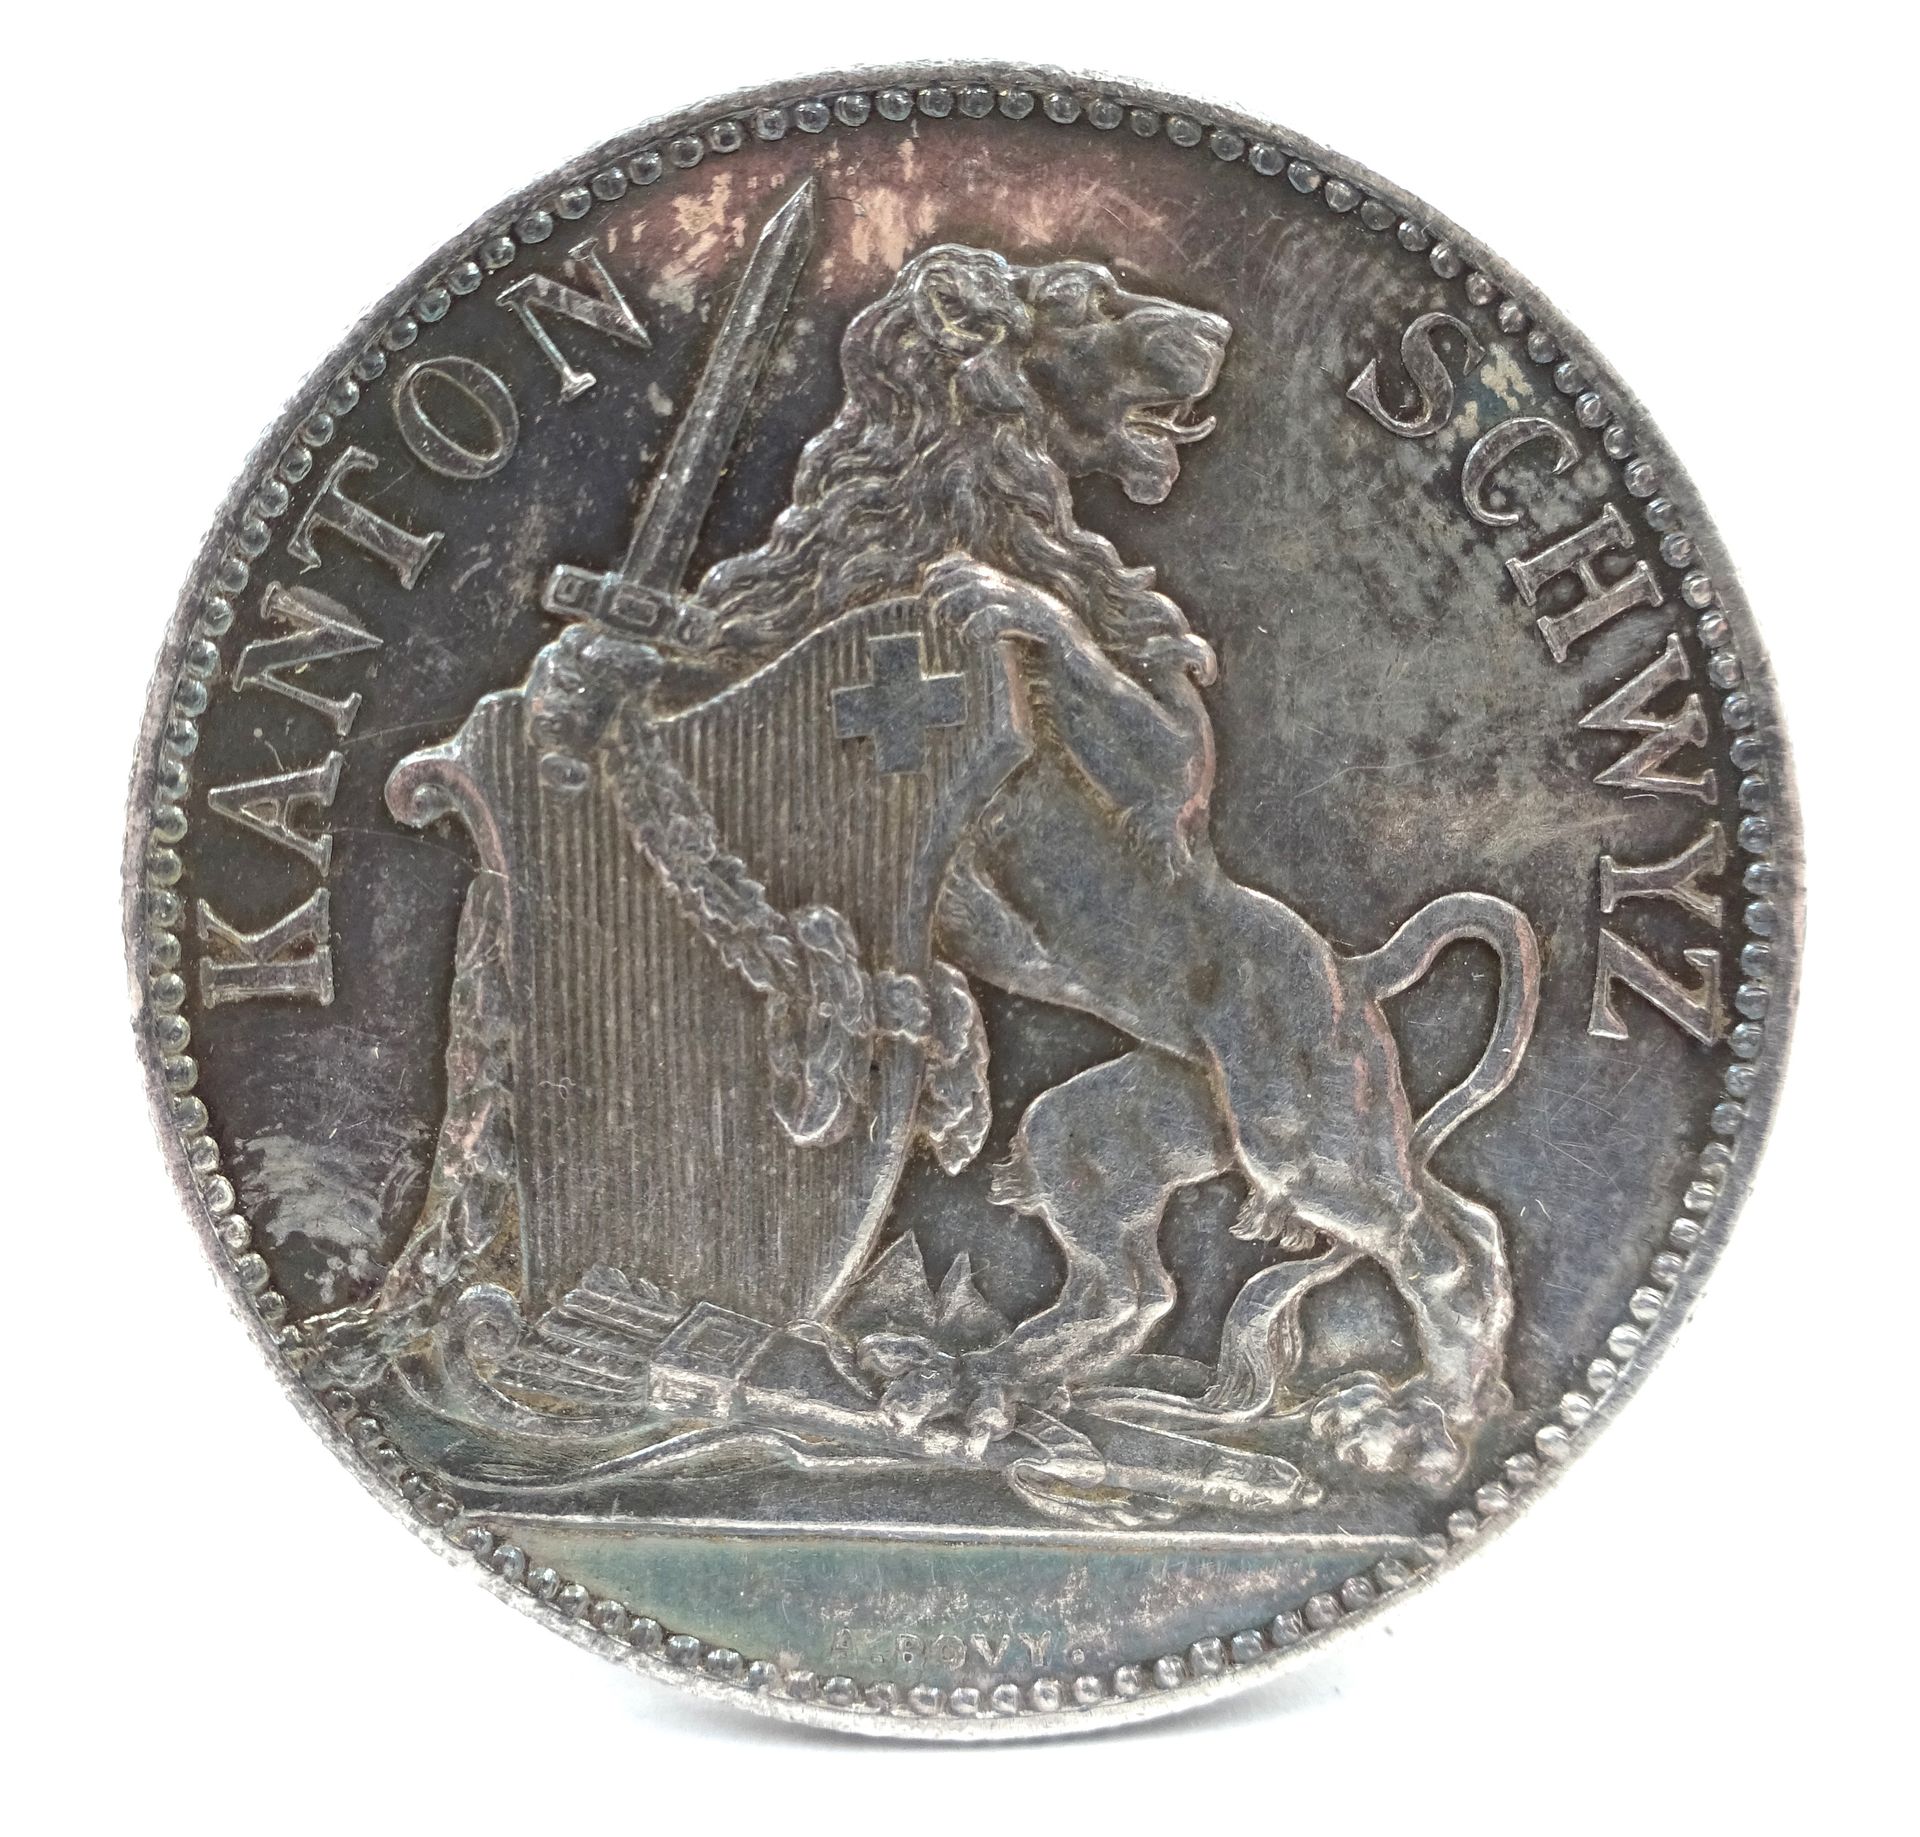 Null Moneda de plata de 5 francos suizos, Schwyz, 1867. 25,02 g netos.